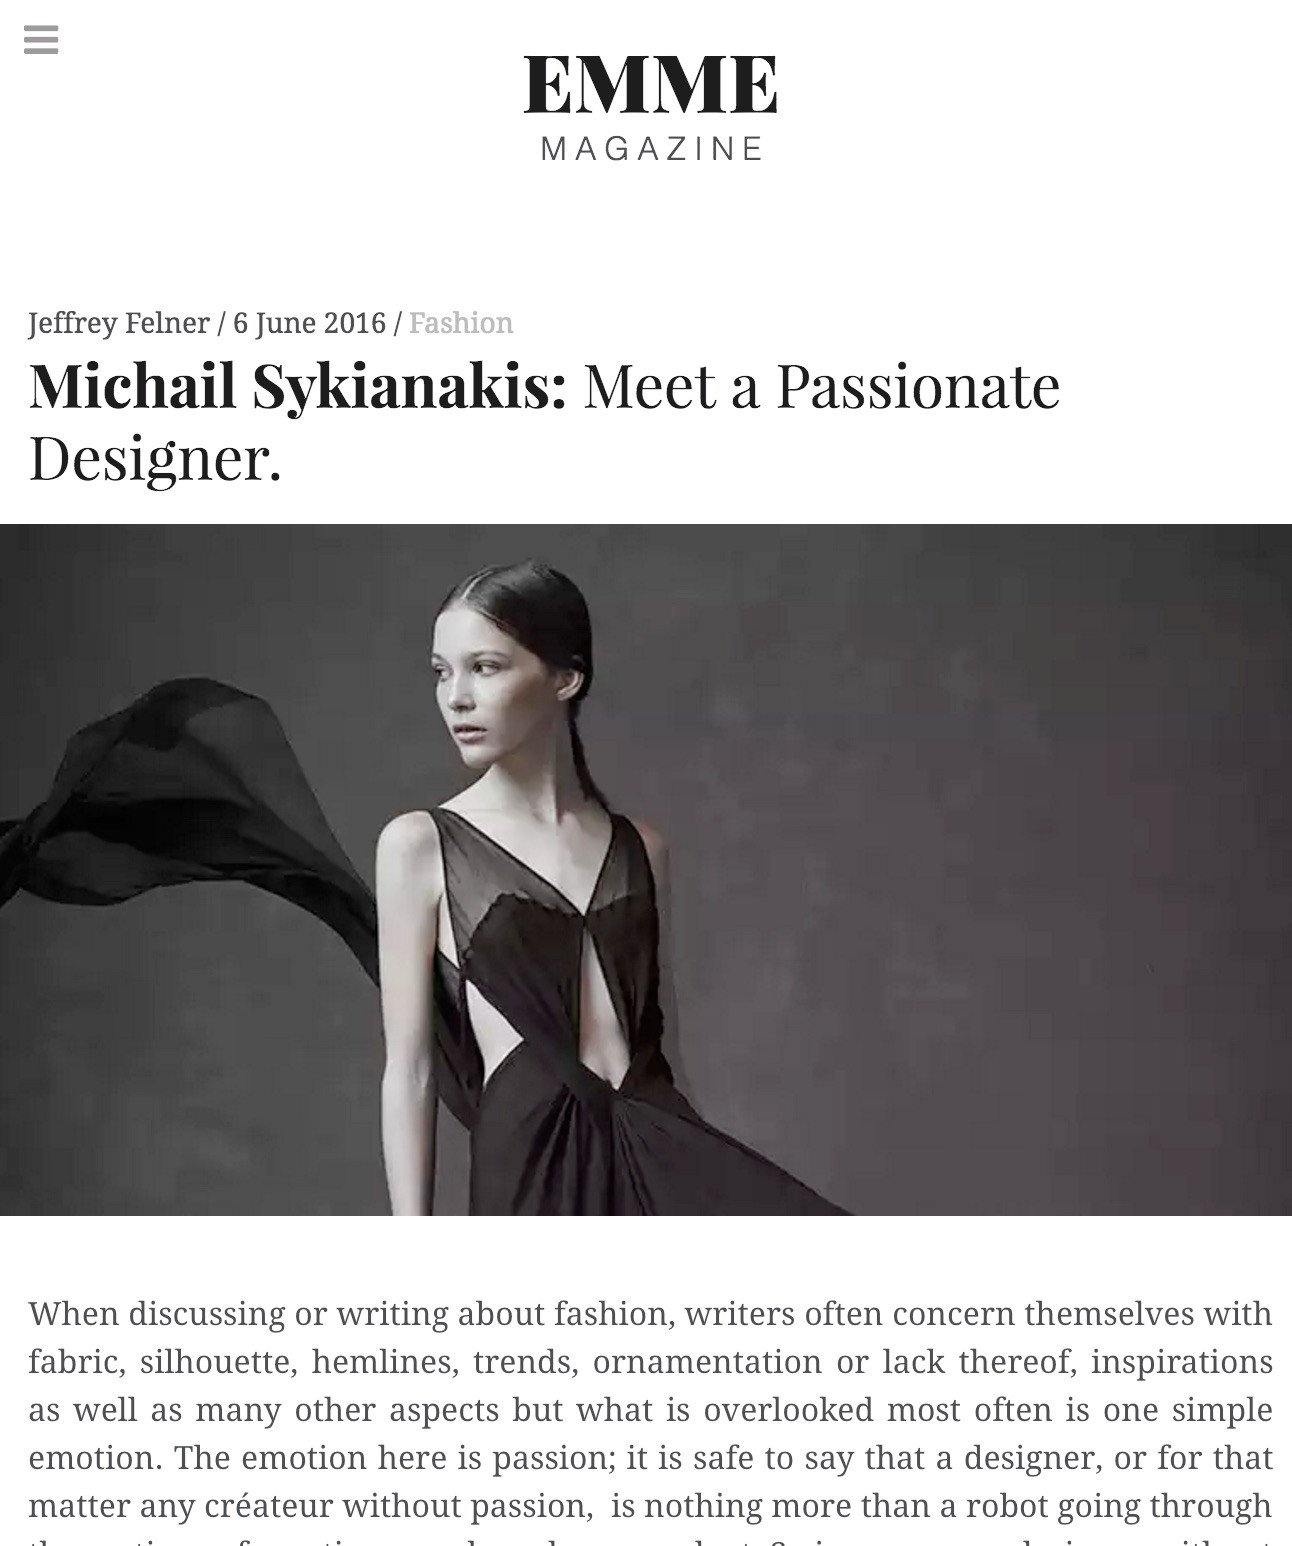 Emme Magazine: Fashion Michail Sykianakis